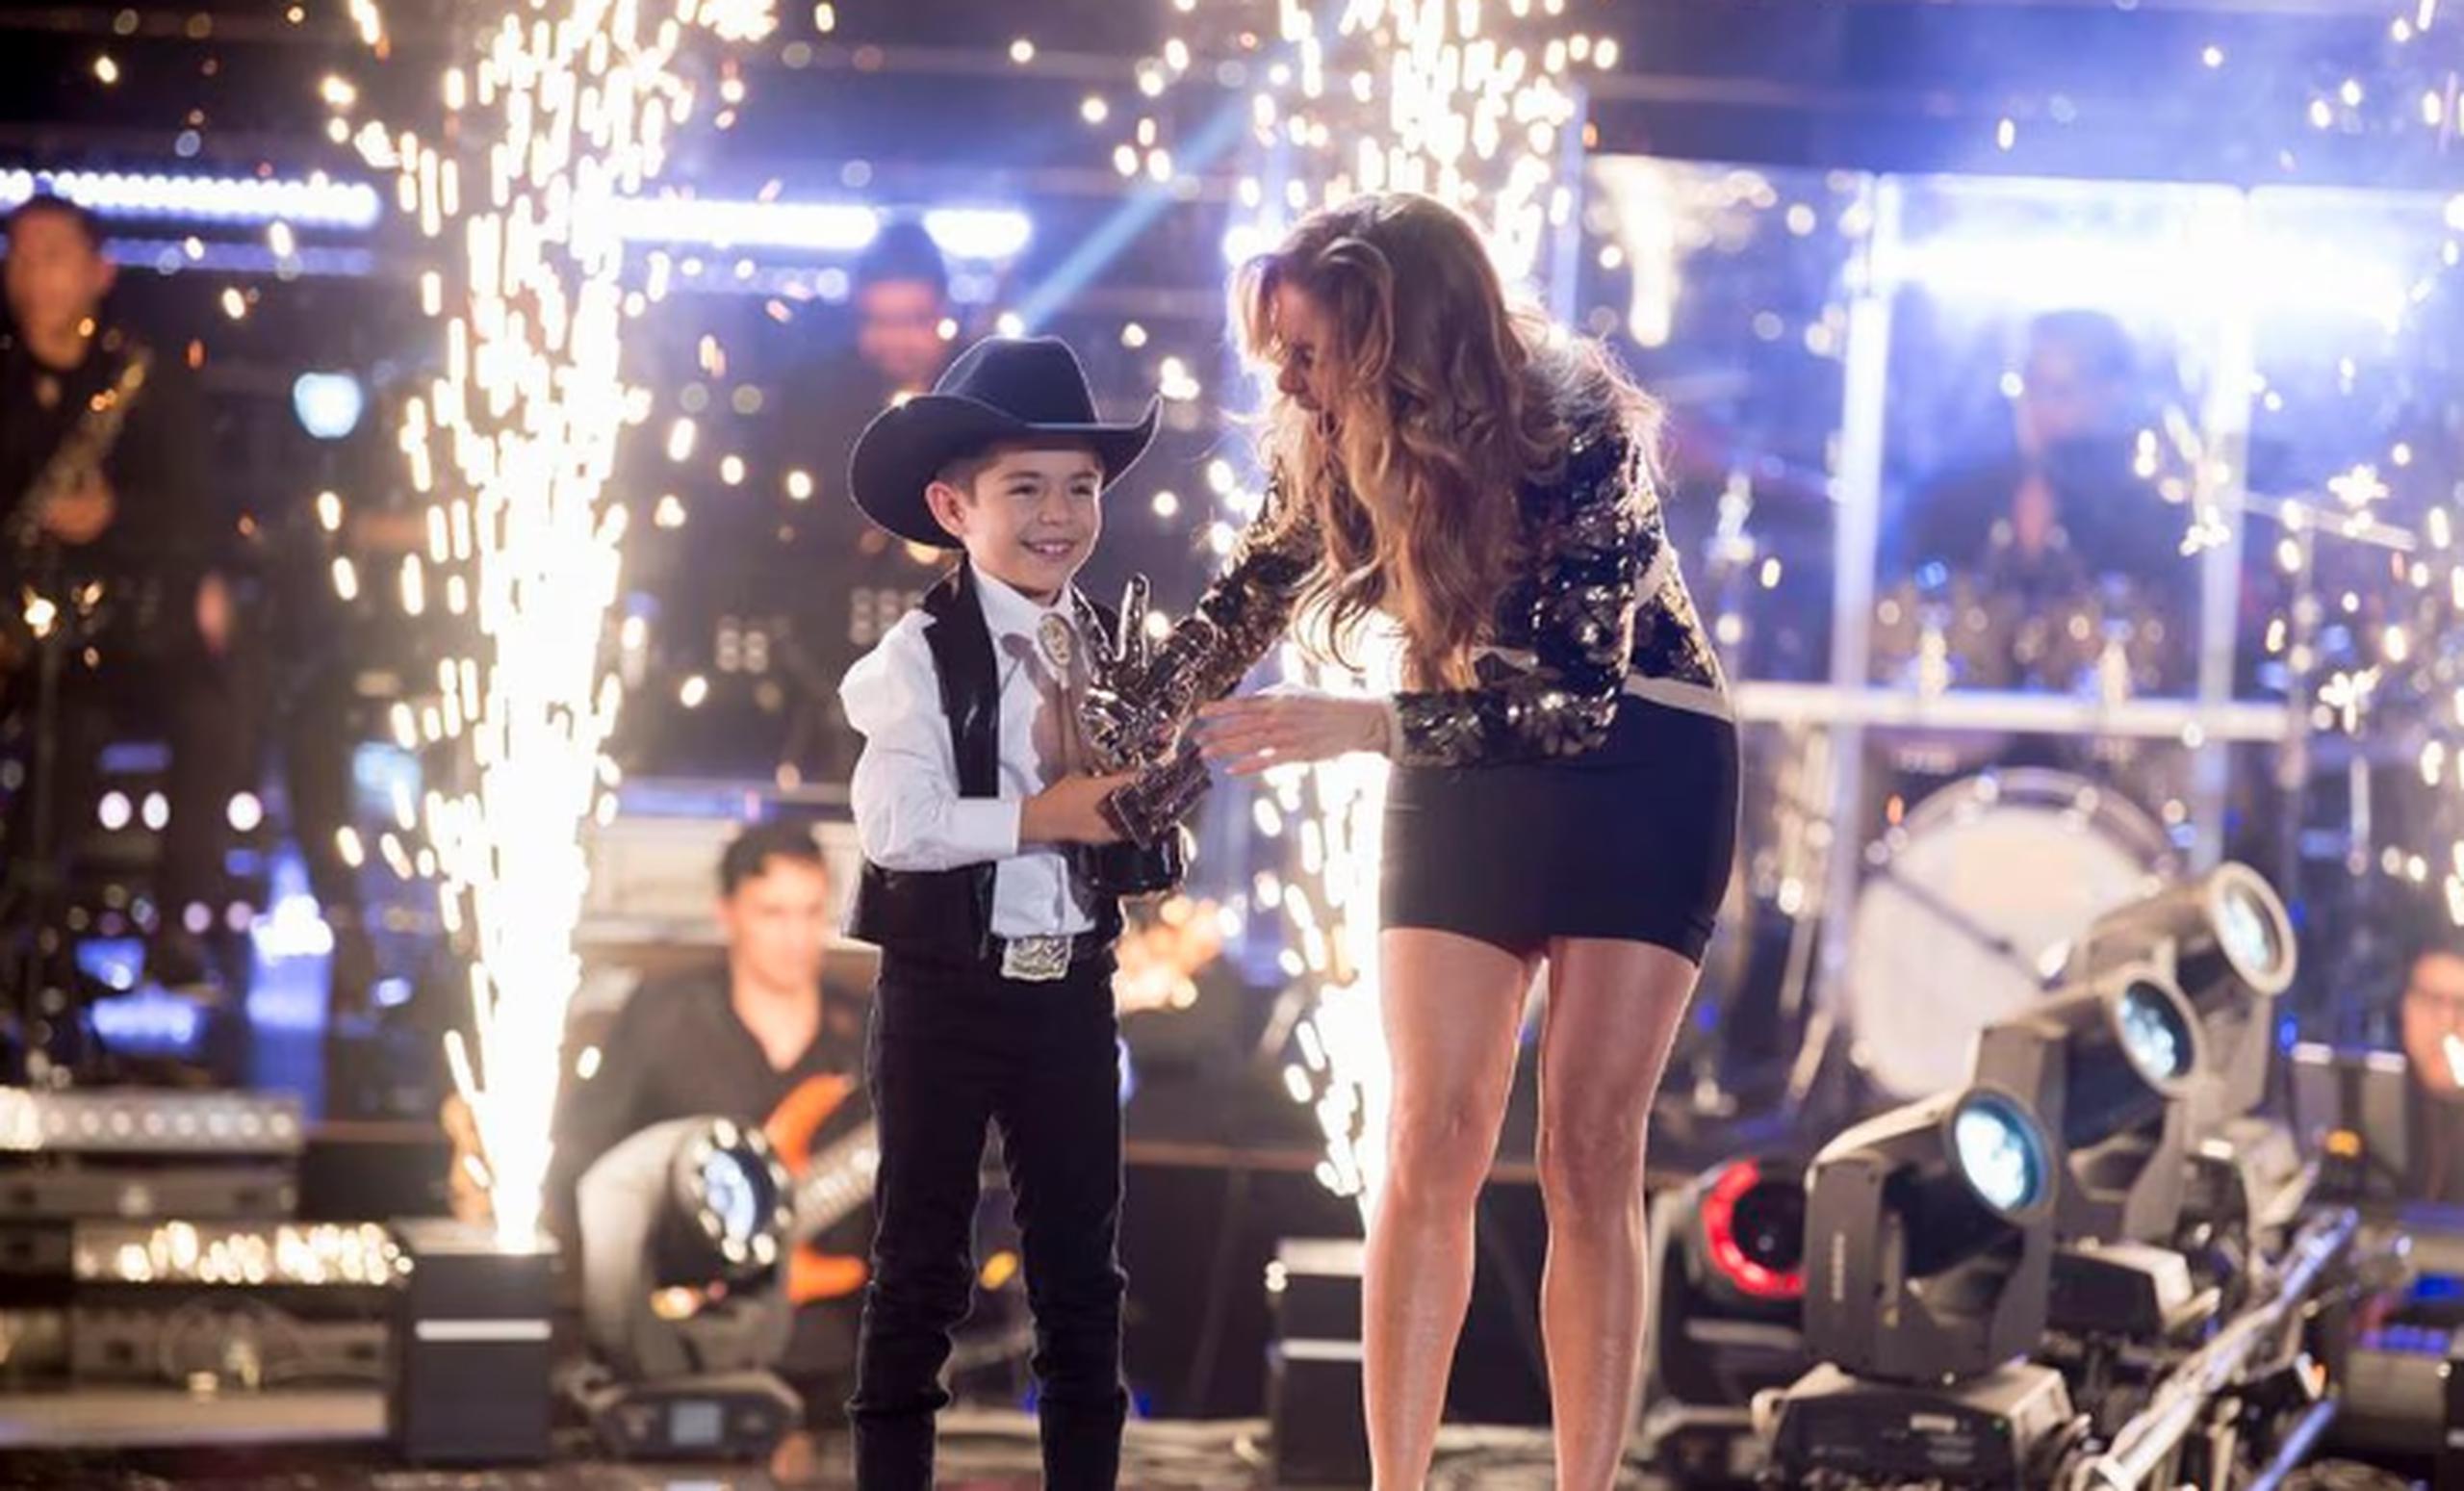 Tras ganar la edición del 2019 de La Voz Kids en México, Roberto Xavier recibió un premio de 500 mil pesos mexicanos ($29,000).